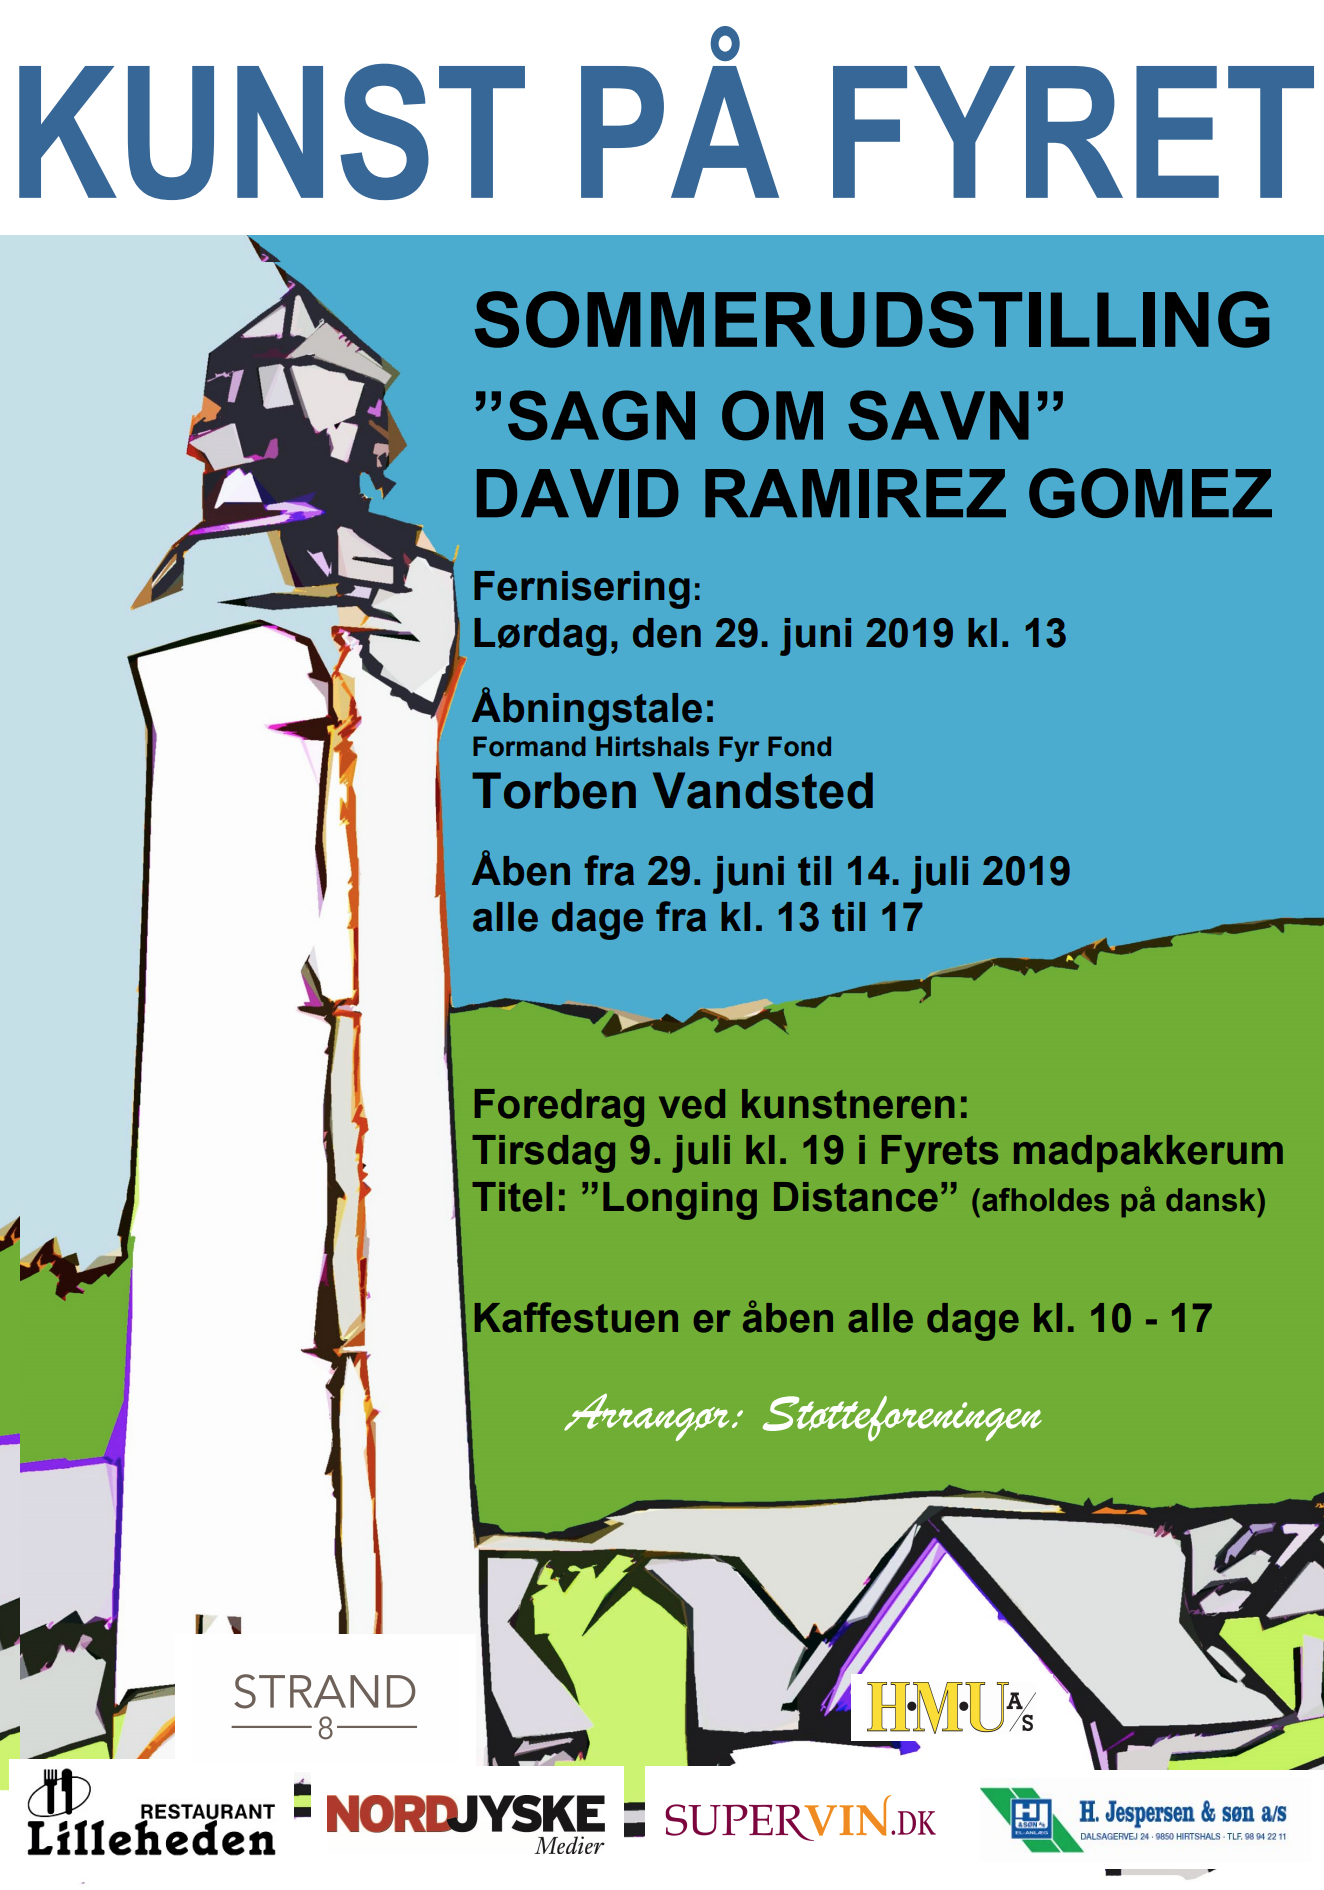 Exhibition at Hirtshals fyr — Ramirez Gomez